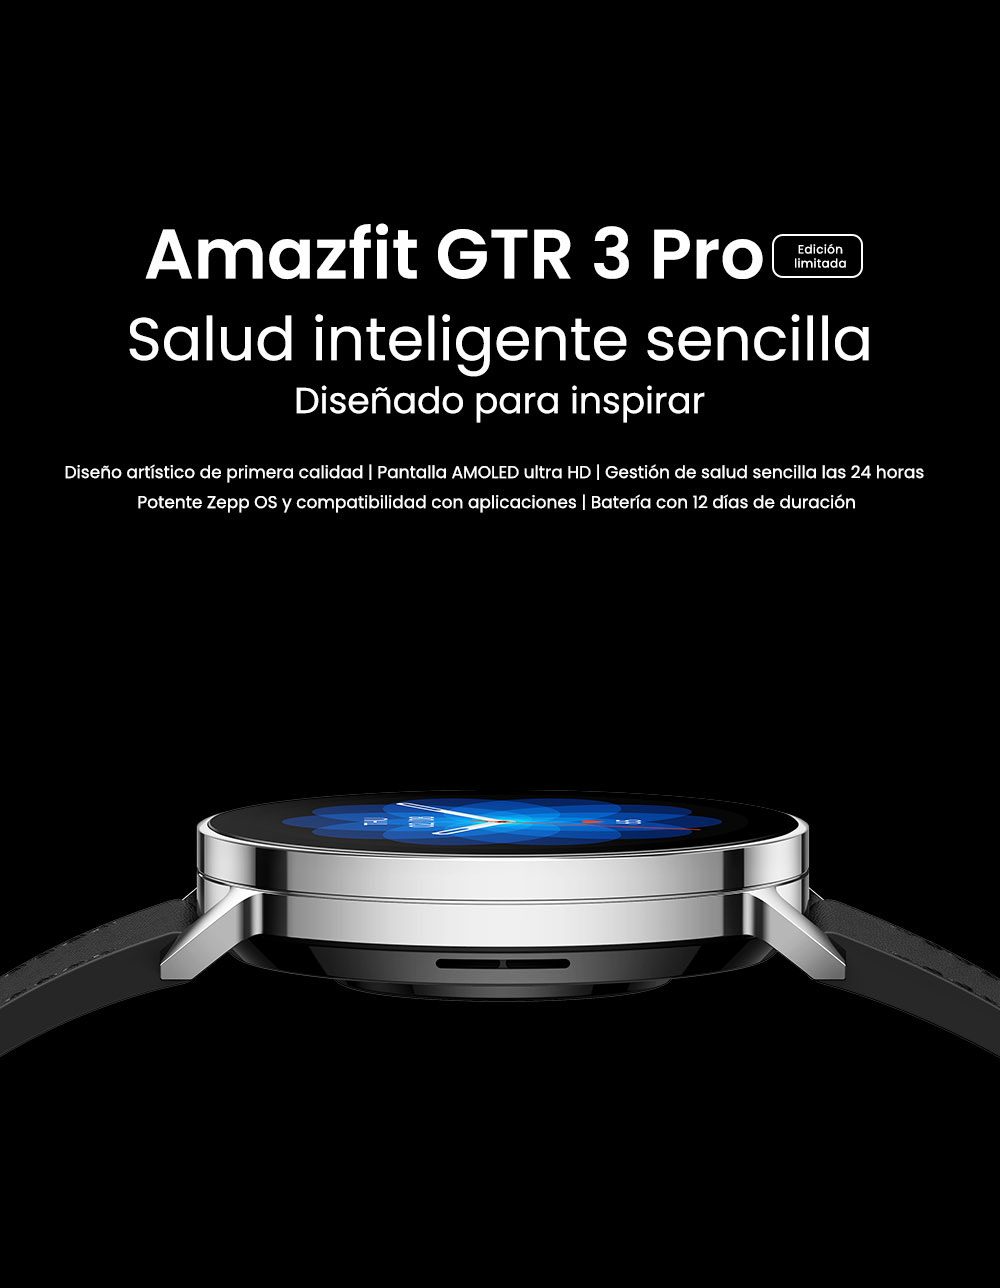 Amazfit GTR 3 y GTR 3 Pro - Zepp OS, pantallas AMOLED, protección